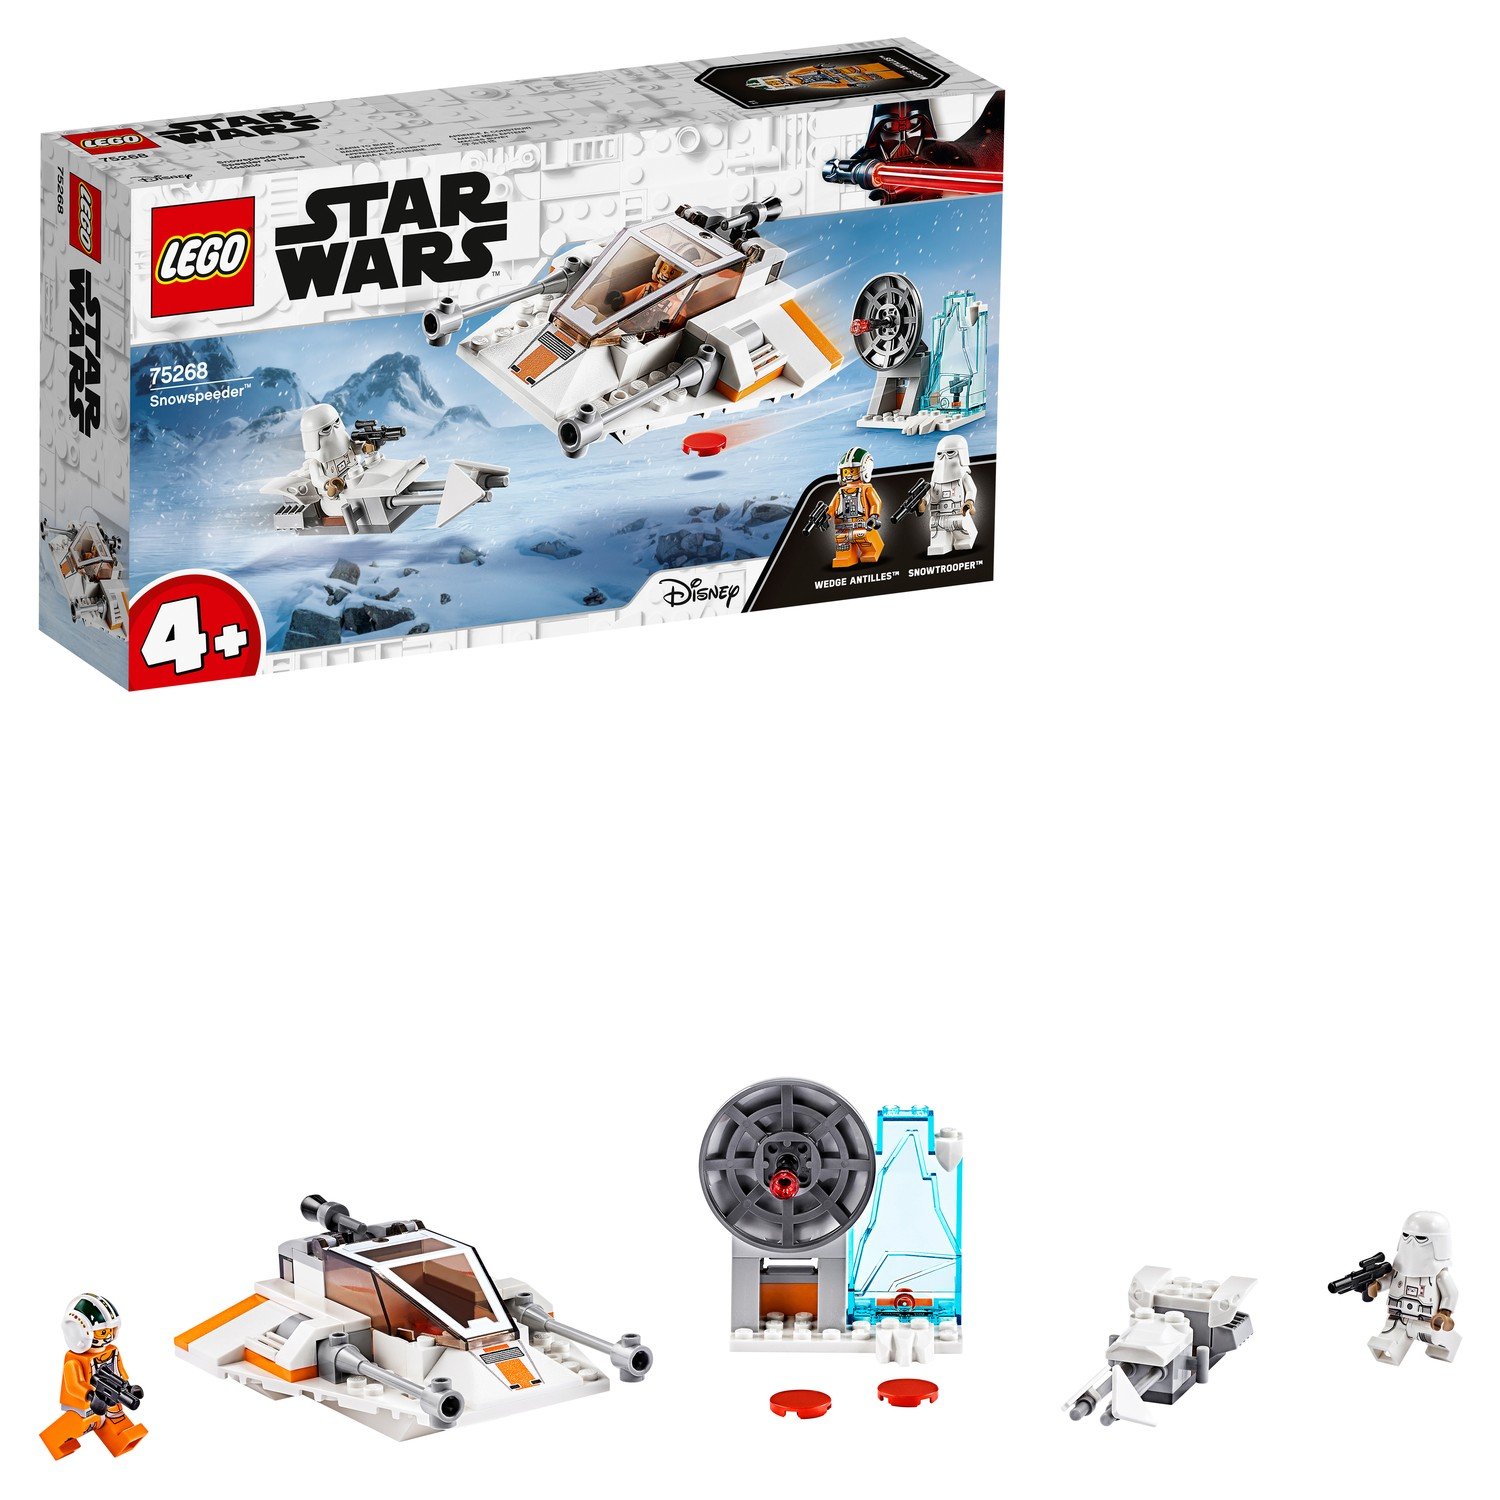 Конструктор LEGO Star Wars Снежный спидер 75268 - фото 1